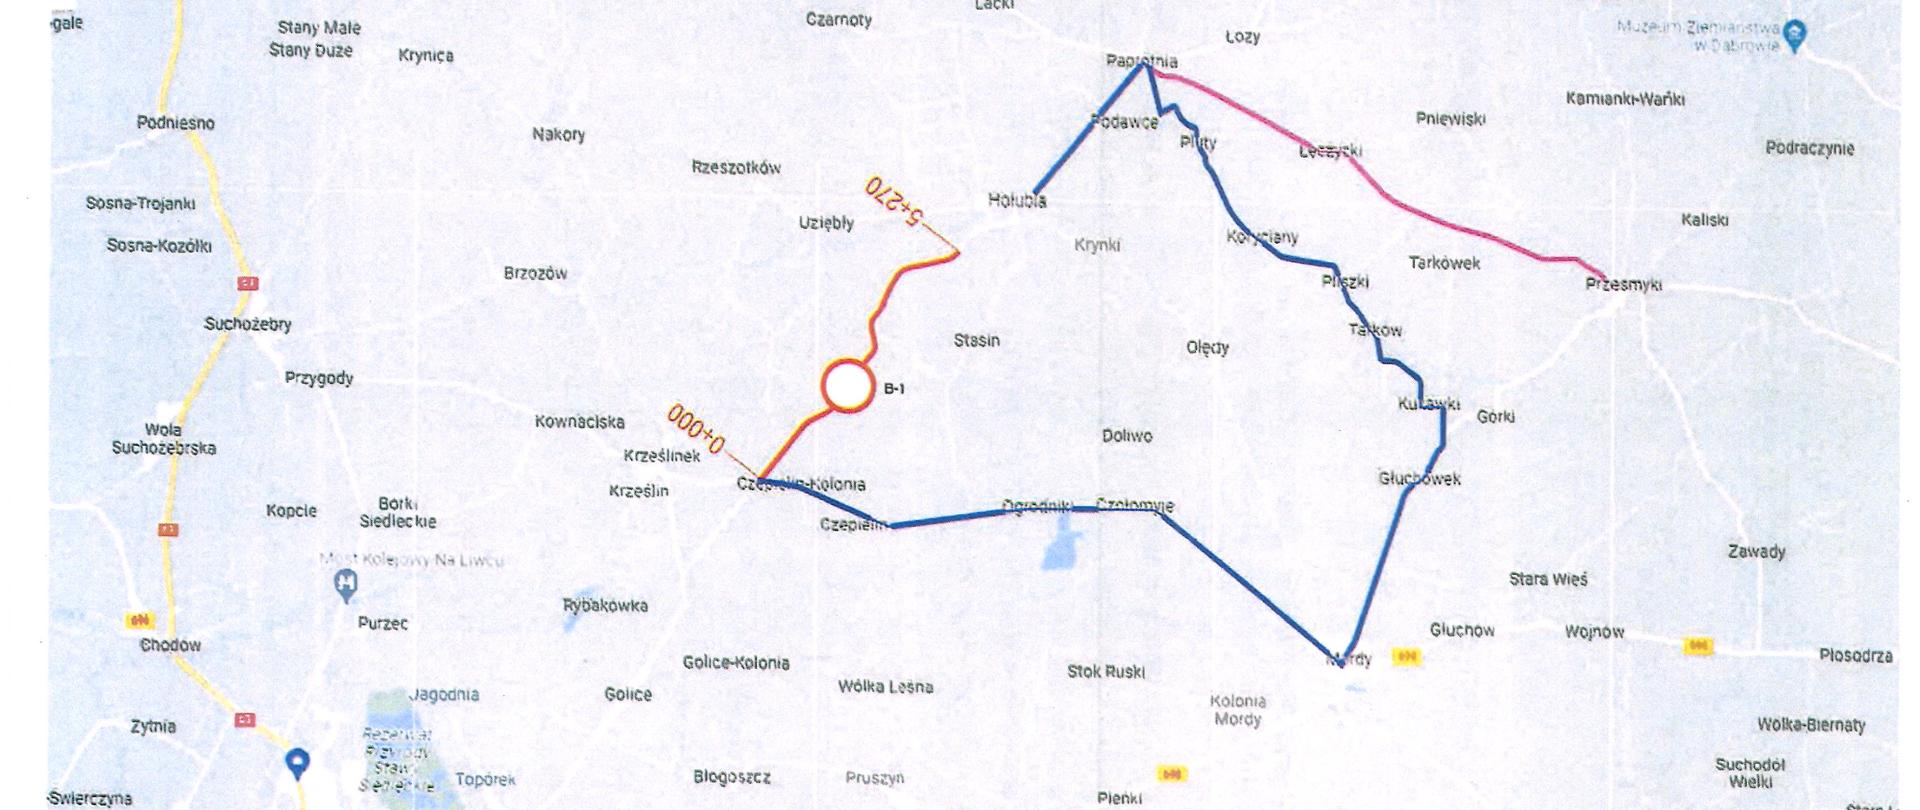 Grafika przedstawia mapę z zaznaczonym objazdem drogi powiatowej nr 3615W z zaznaczonym objazdem do m. Hołubla przez miejscowości: Czepielin Kolonia, Czepielin, Ogrodniki,Czołomyje, Mordy, Głuchówek, Kukawki, Tarków, Pliszki, Koryciany, Pluty Podawce i Paprotnia